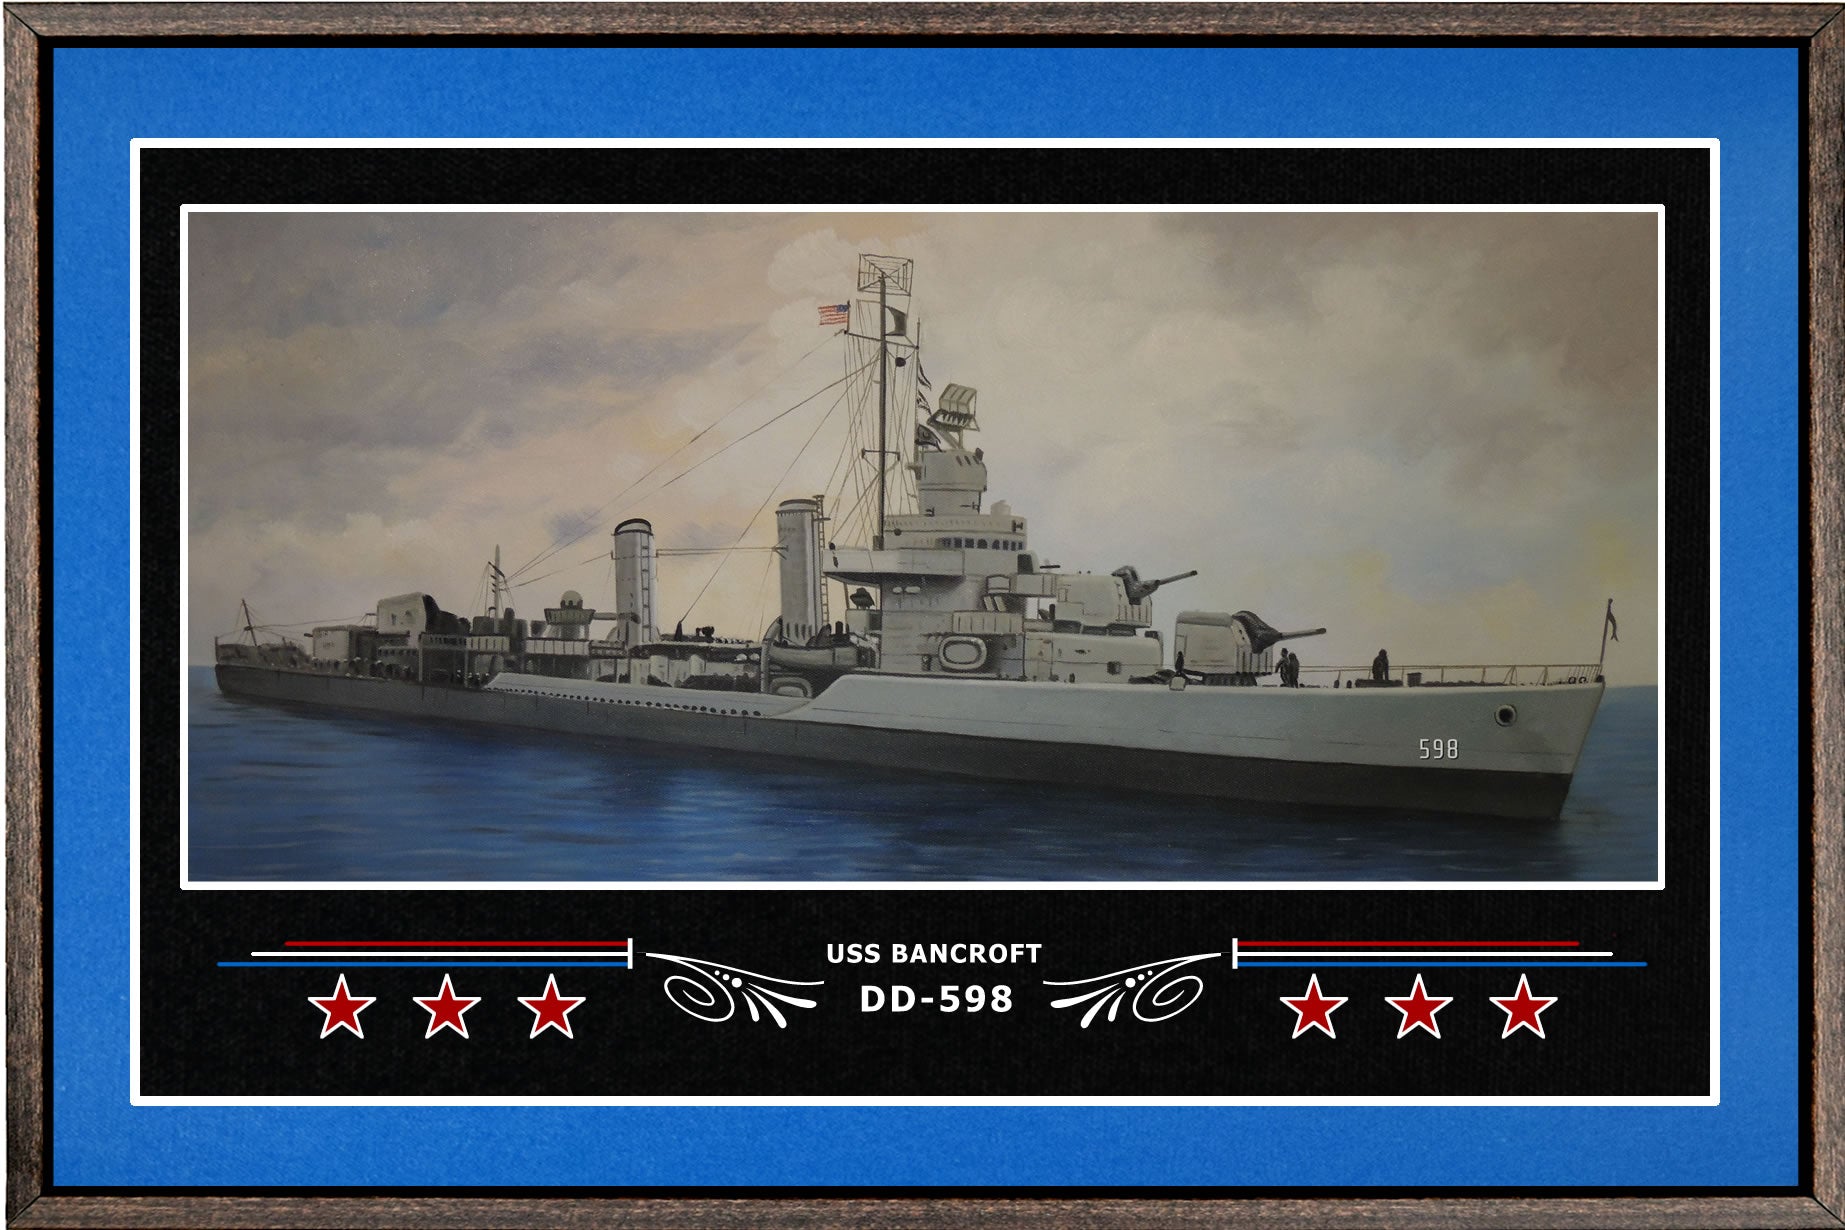 USS BANCROFT DD 598 BOX FRAMED CANVAS ART BLUE